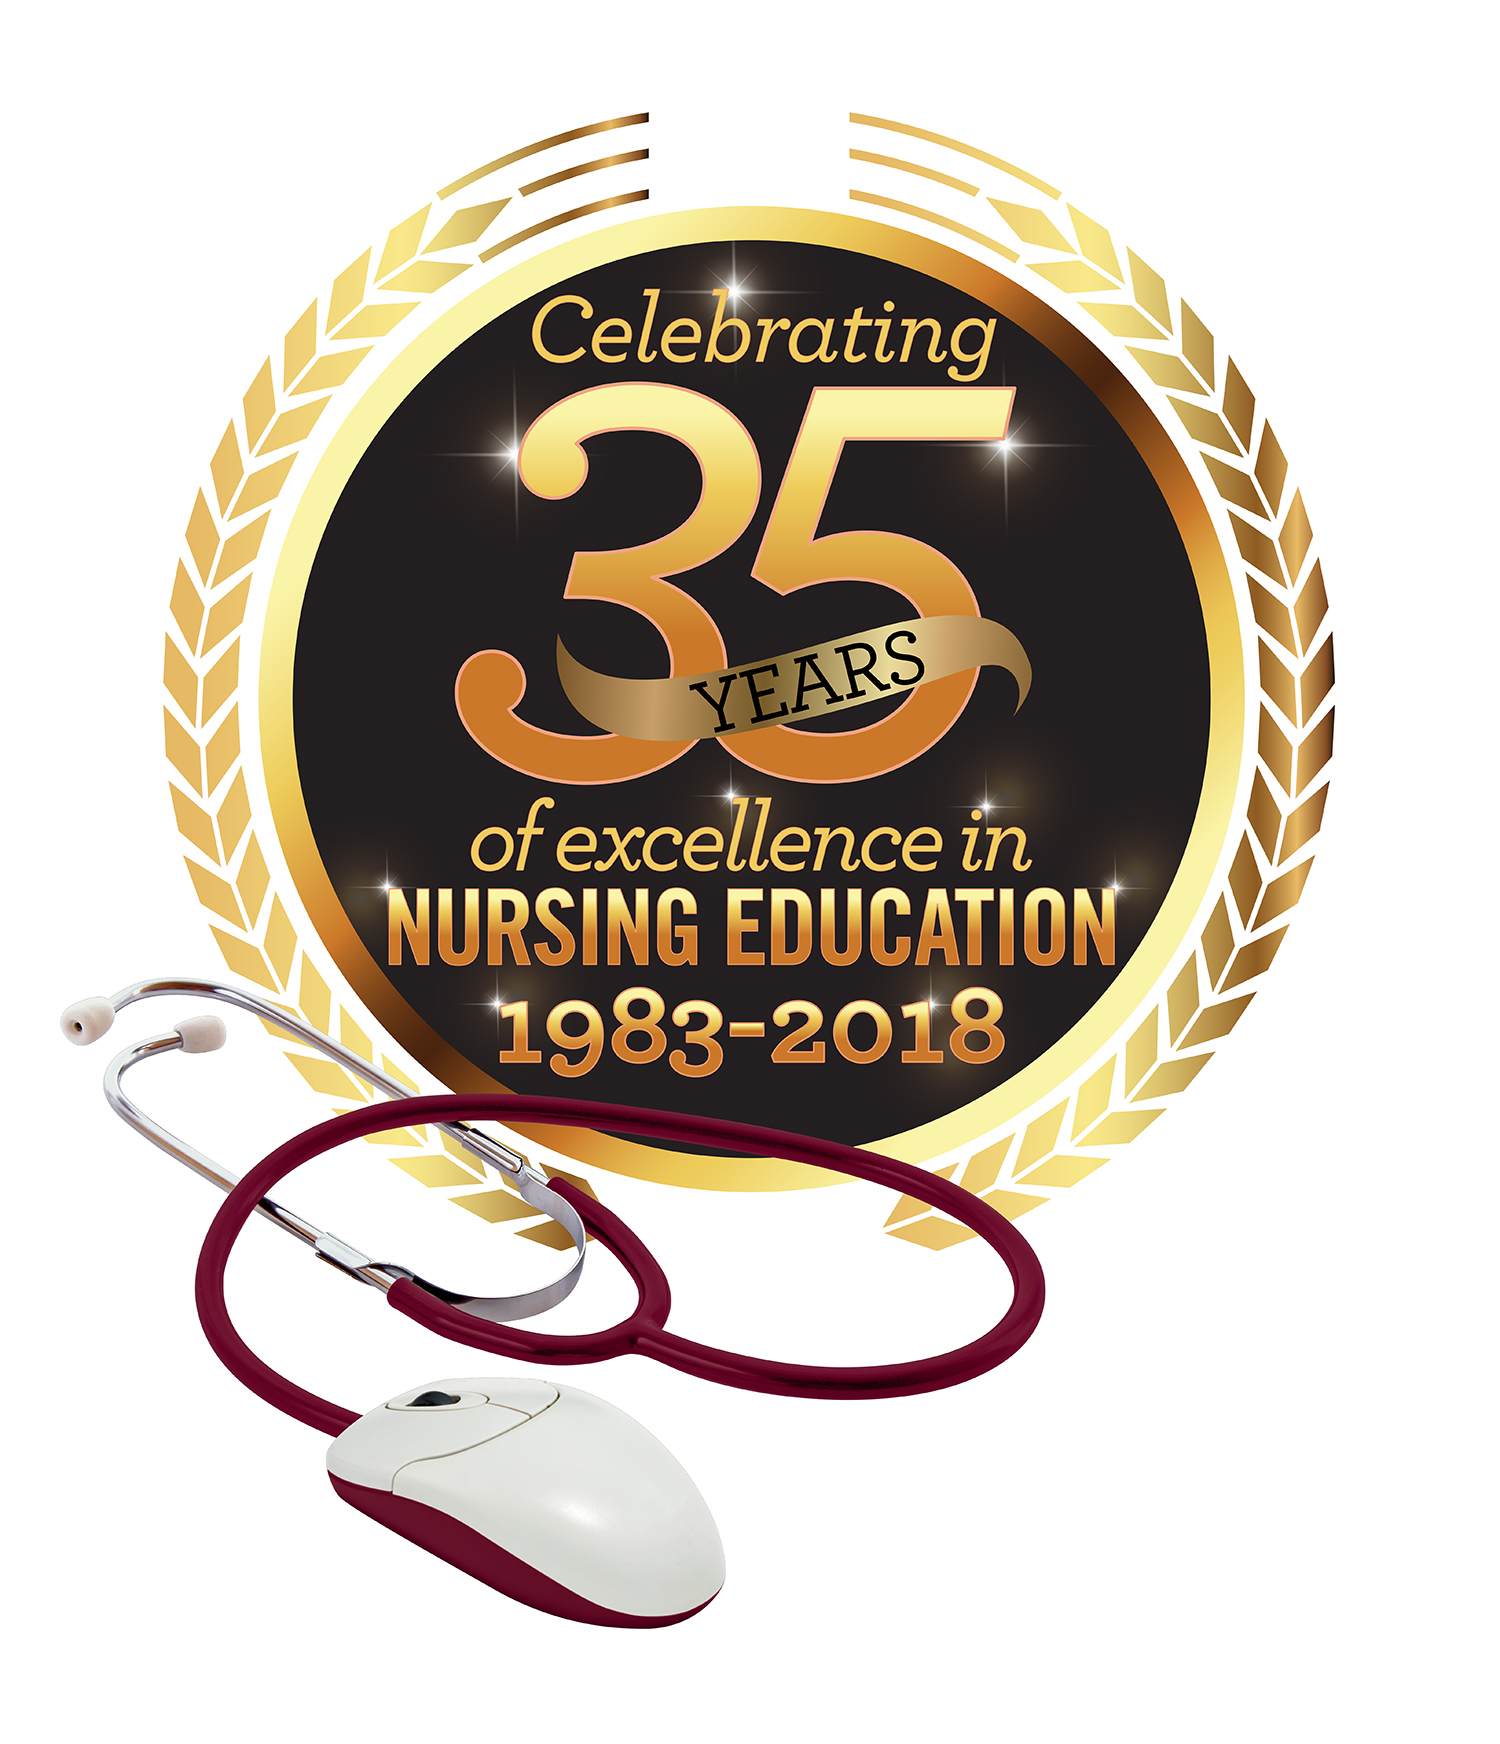 School of Nursing 35 Years of Excellence in Nursing Education